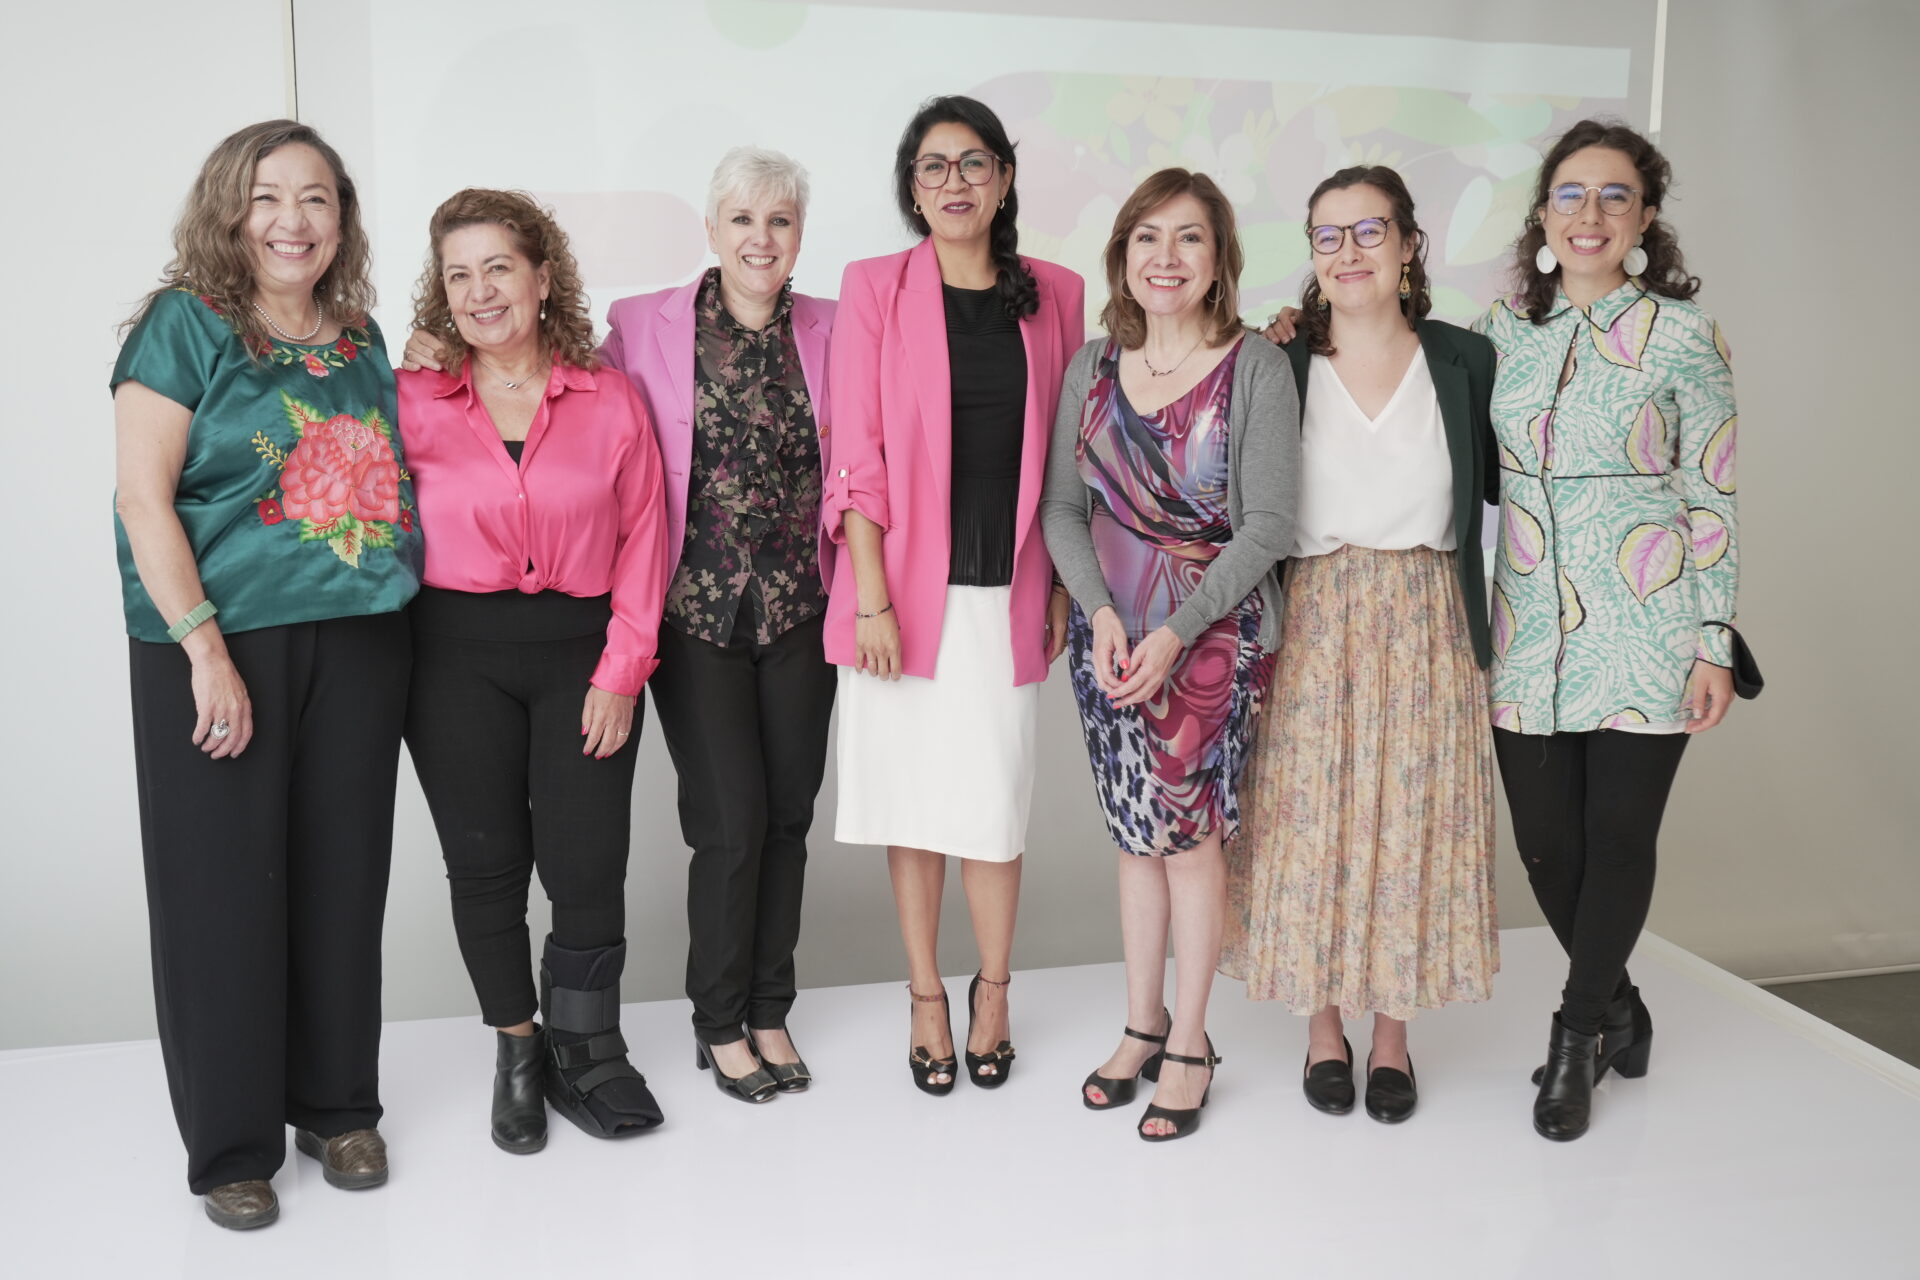 Empresas, instituciones, ONGs: aliados para empoderamiento de las mujeres